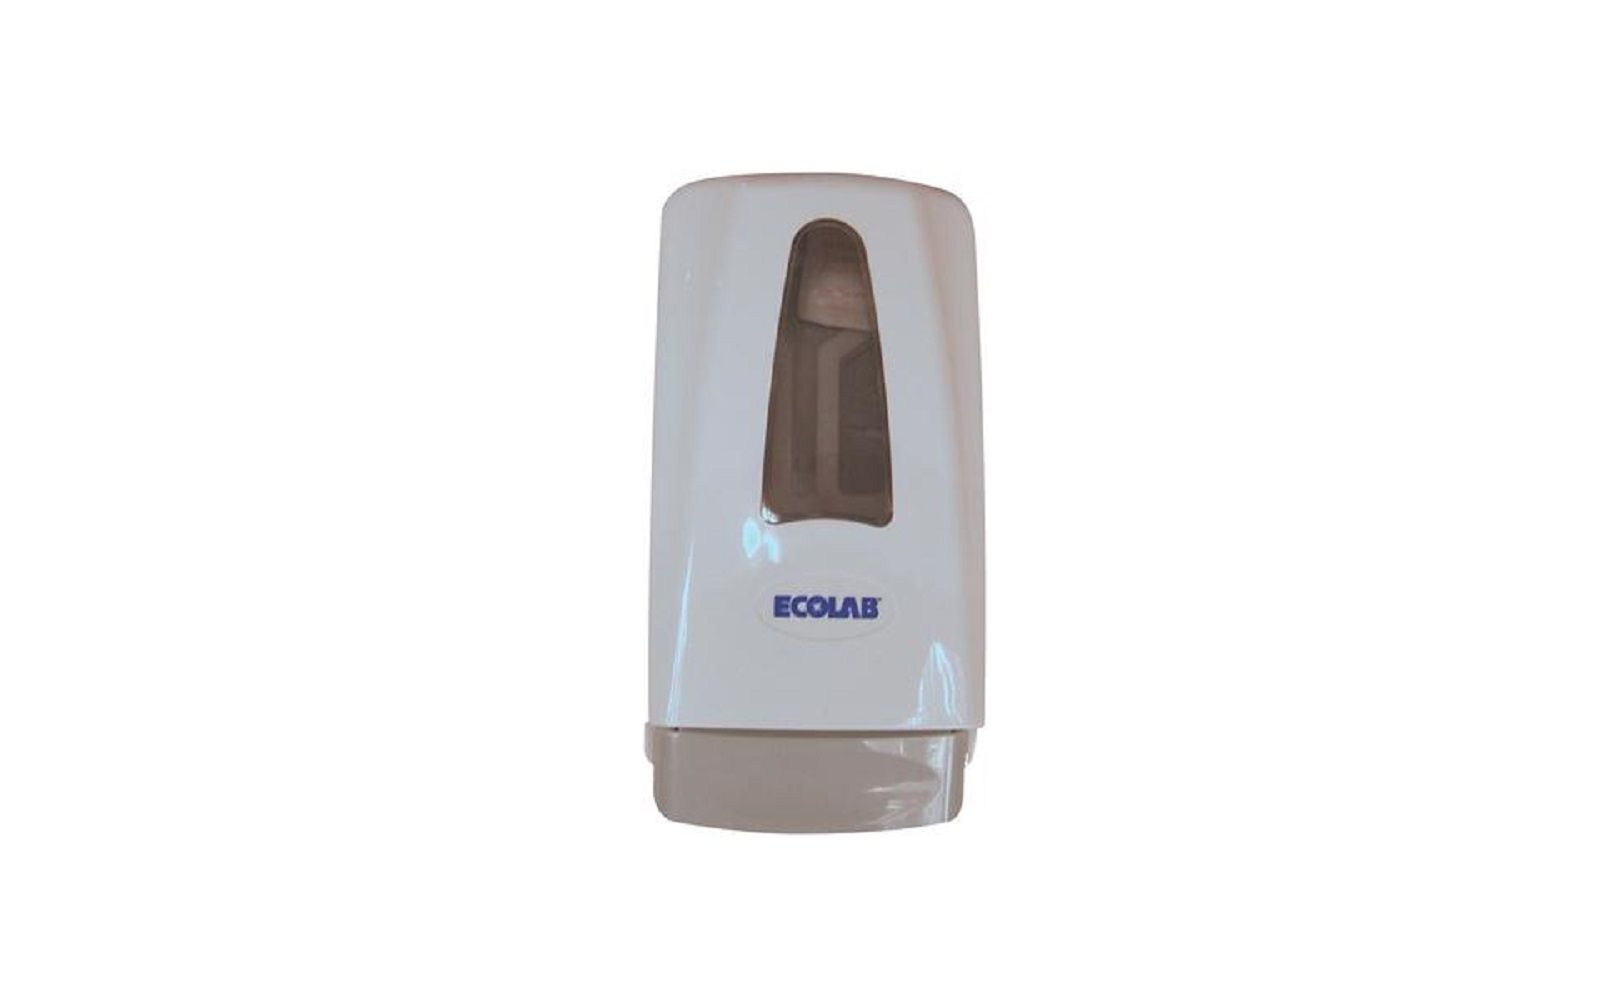 Bullseye hand soap dispensers – 1000 ml, 12/pkg